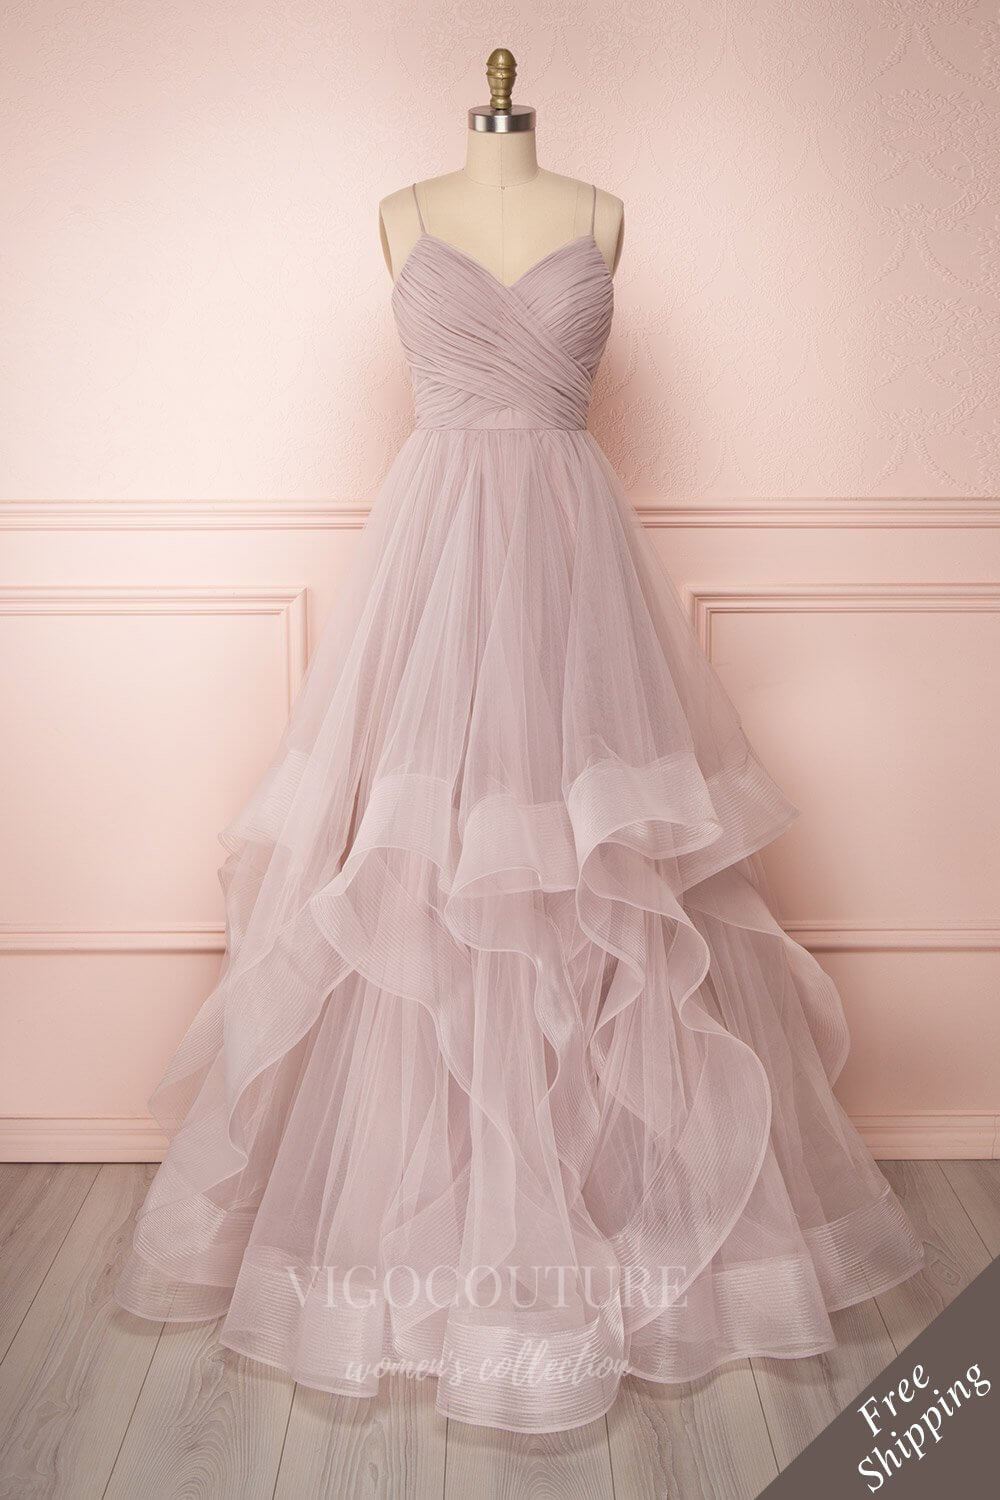 vigocouture-Mauve Spaghetti Strap Prom Dress 20583-Prom Dresses-vigocouture-Mauve-US2-